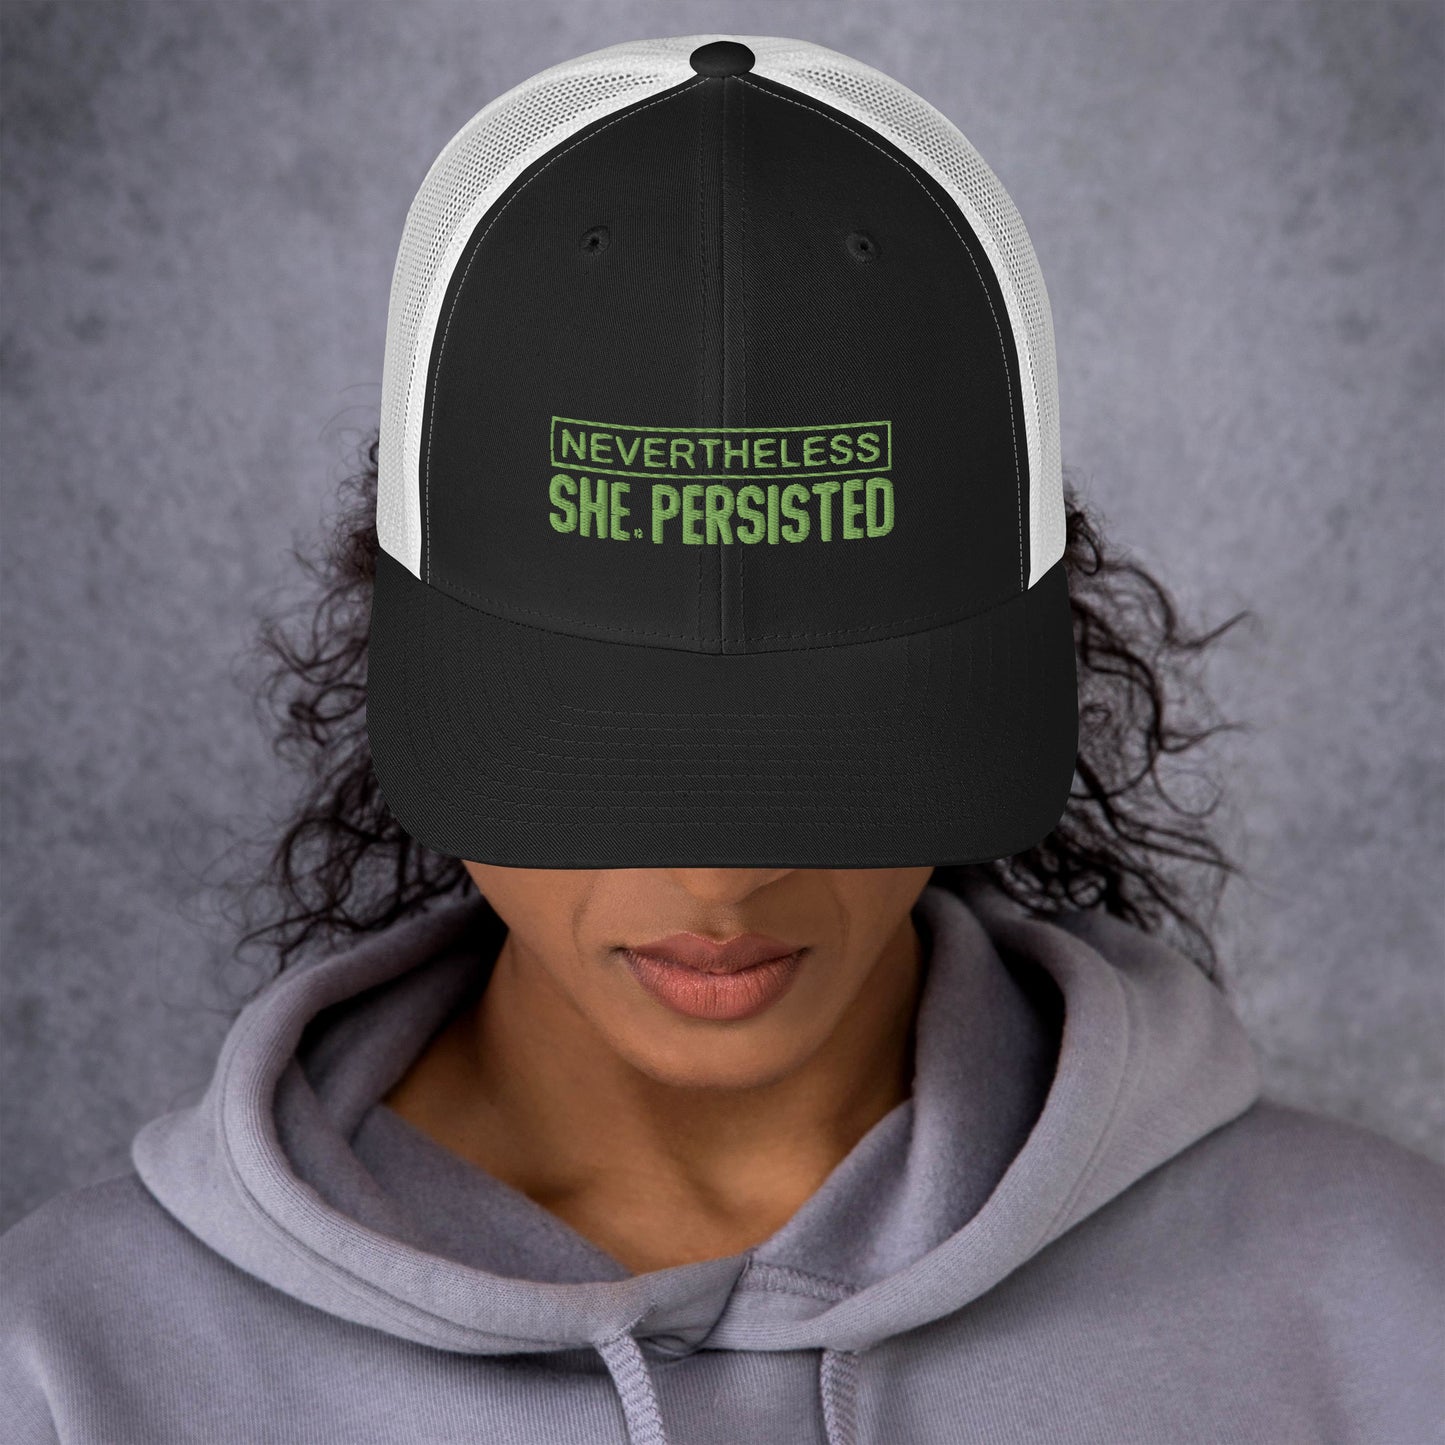 Trucker Cap - She Persisted - FAFO Sportswear